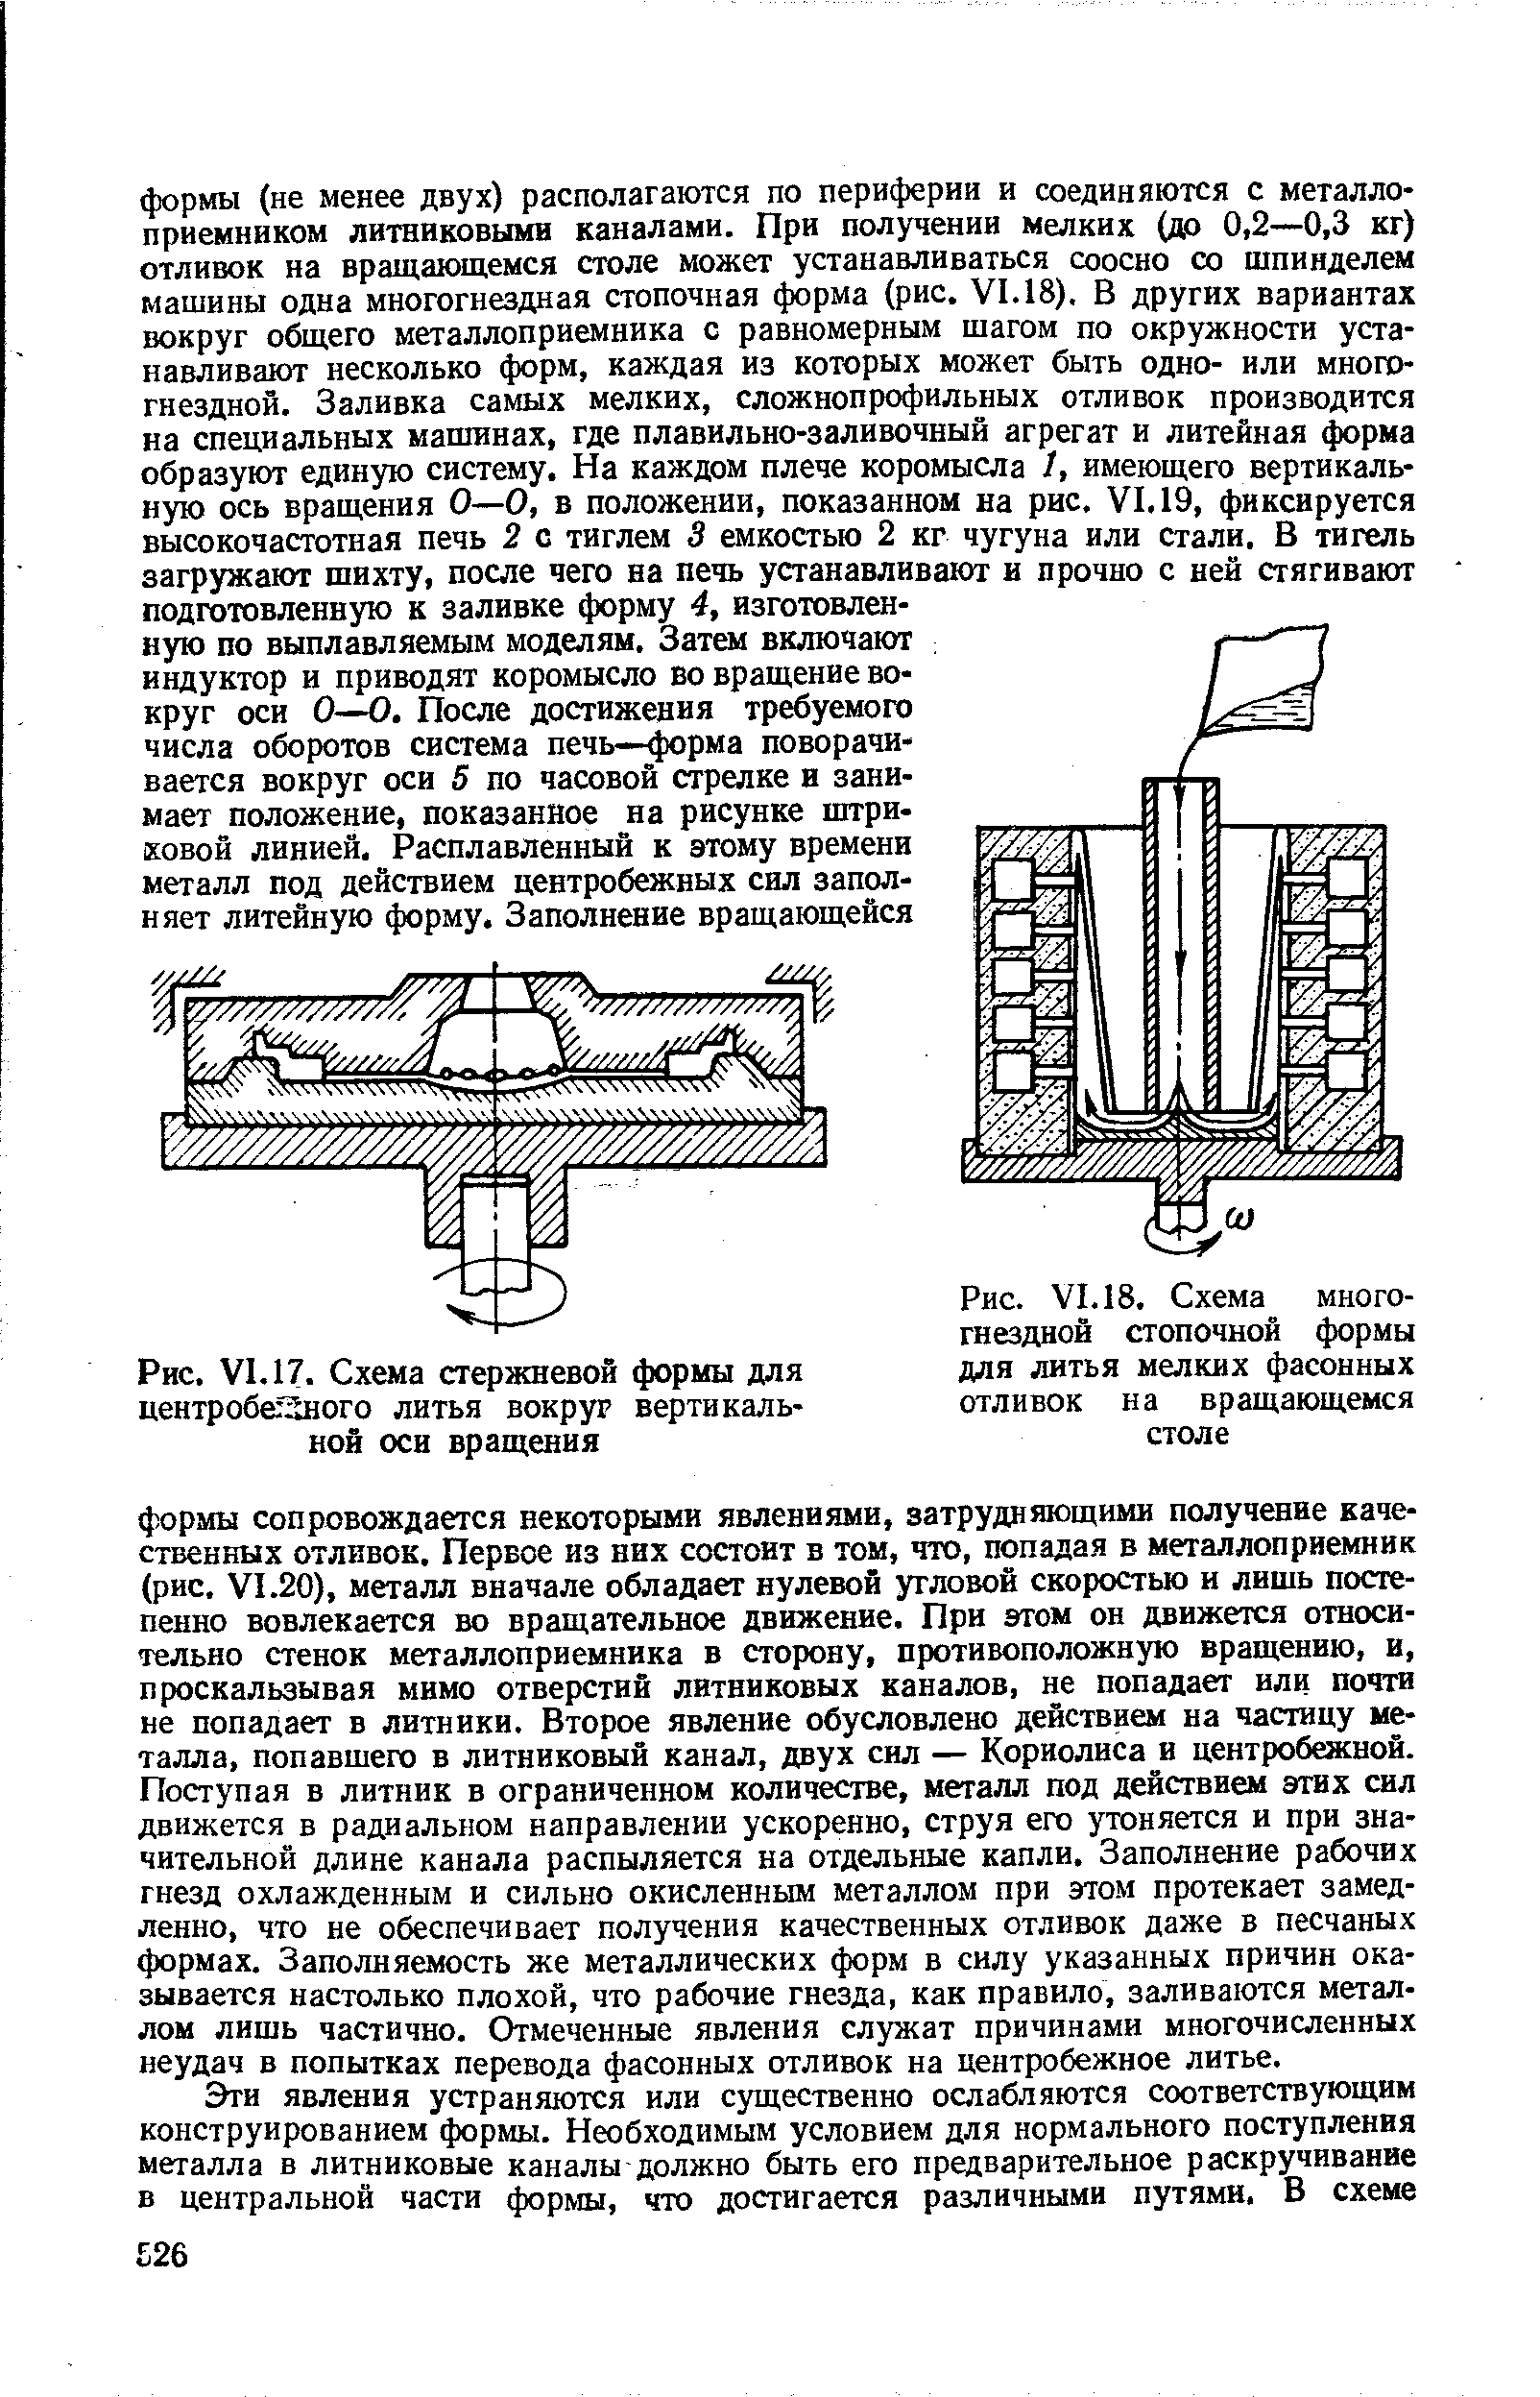 Рис. VI. 17. Схема стержневой формы для центробегзного литья вокруг вертикальной оси вращения
